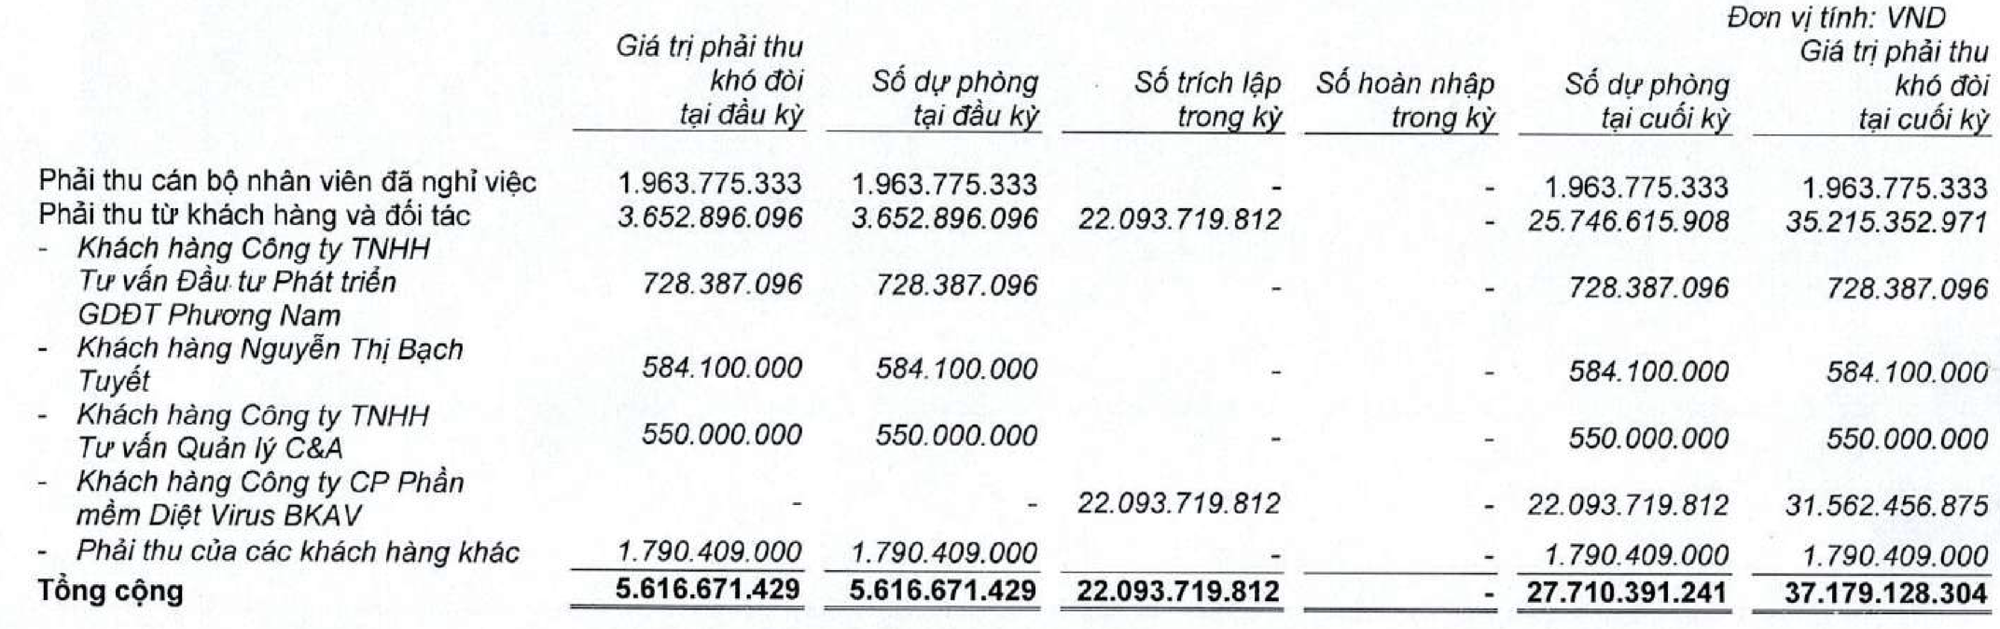 VNDirect bất ngờ phát sinh khoản phải thu khó đòi hàng chục tỷ đối với Bkav Pro của ông Nguyễn Tử Quảng- Ảnh 2.